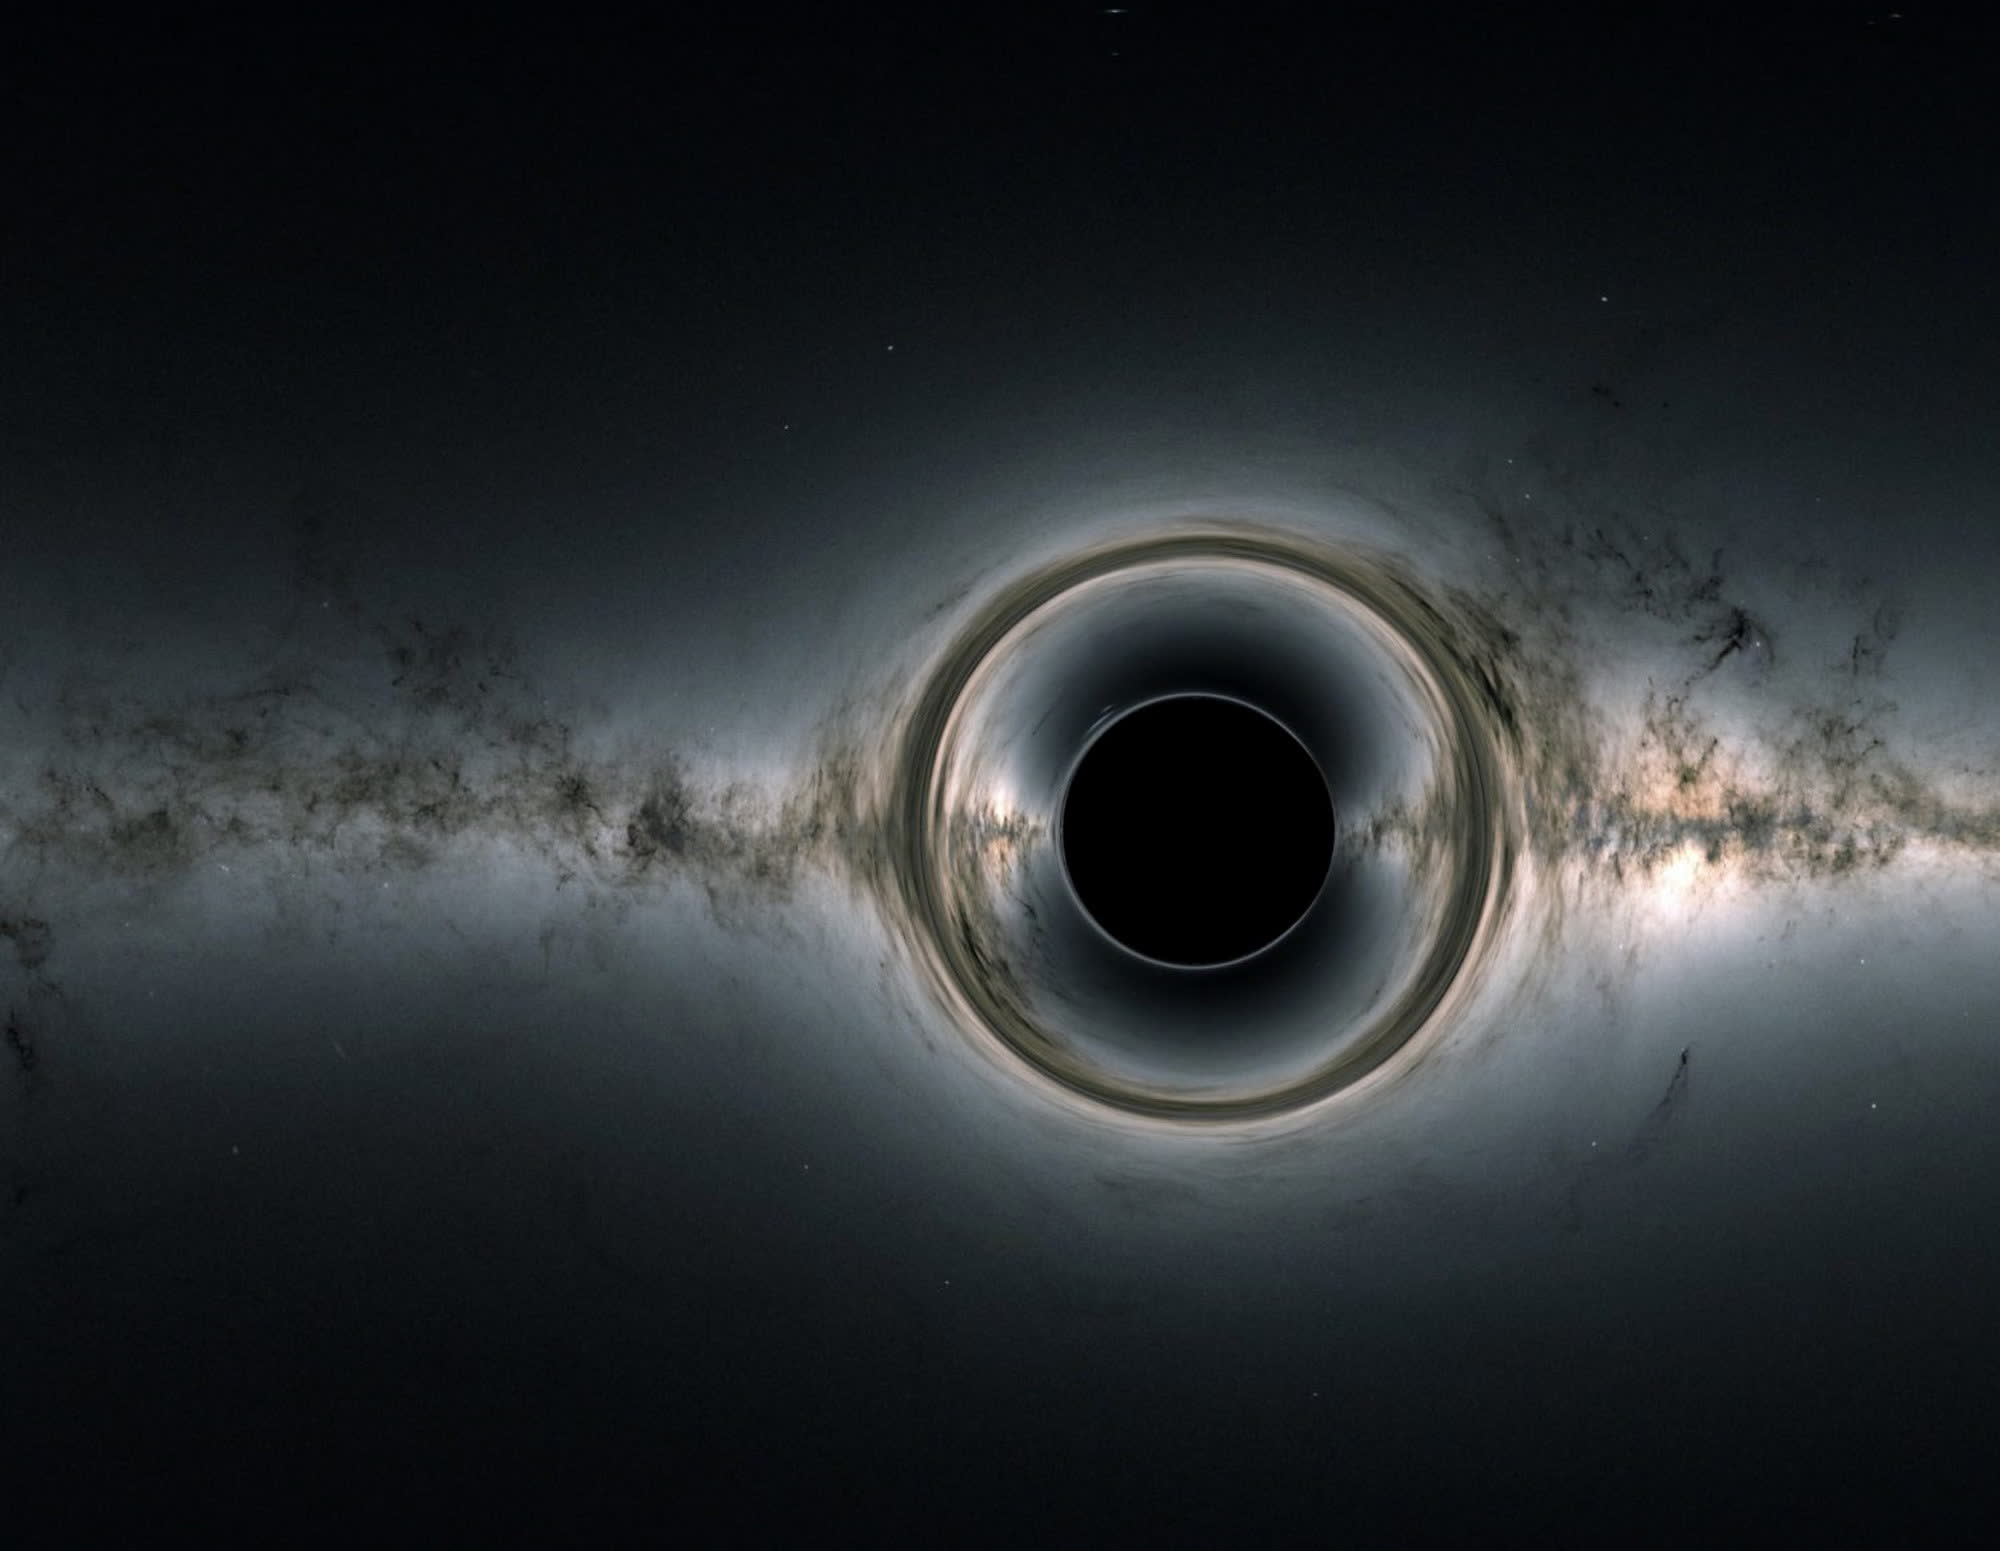 Astrónomos detectan el agujero negro estelar más masivo de la Vía Láctea